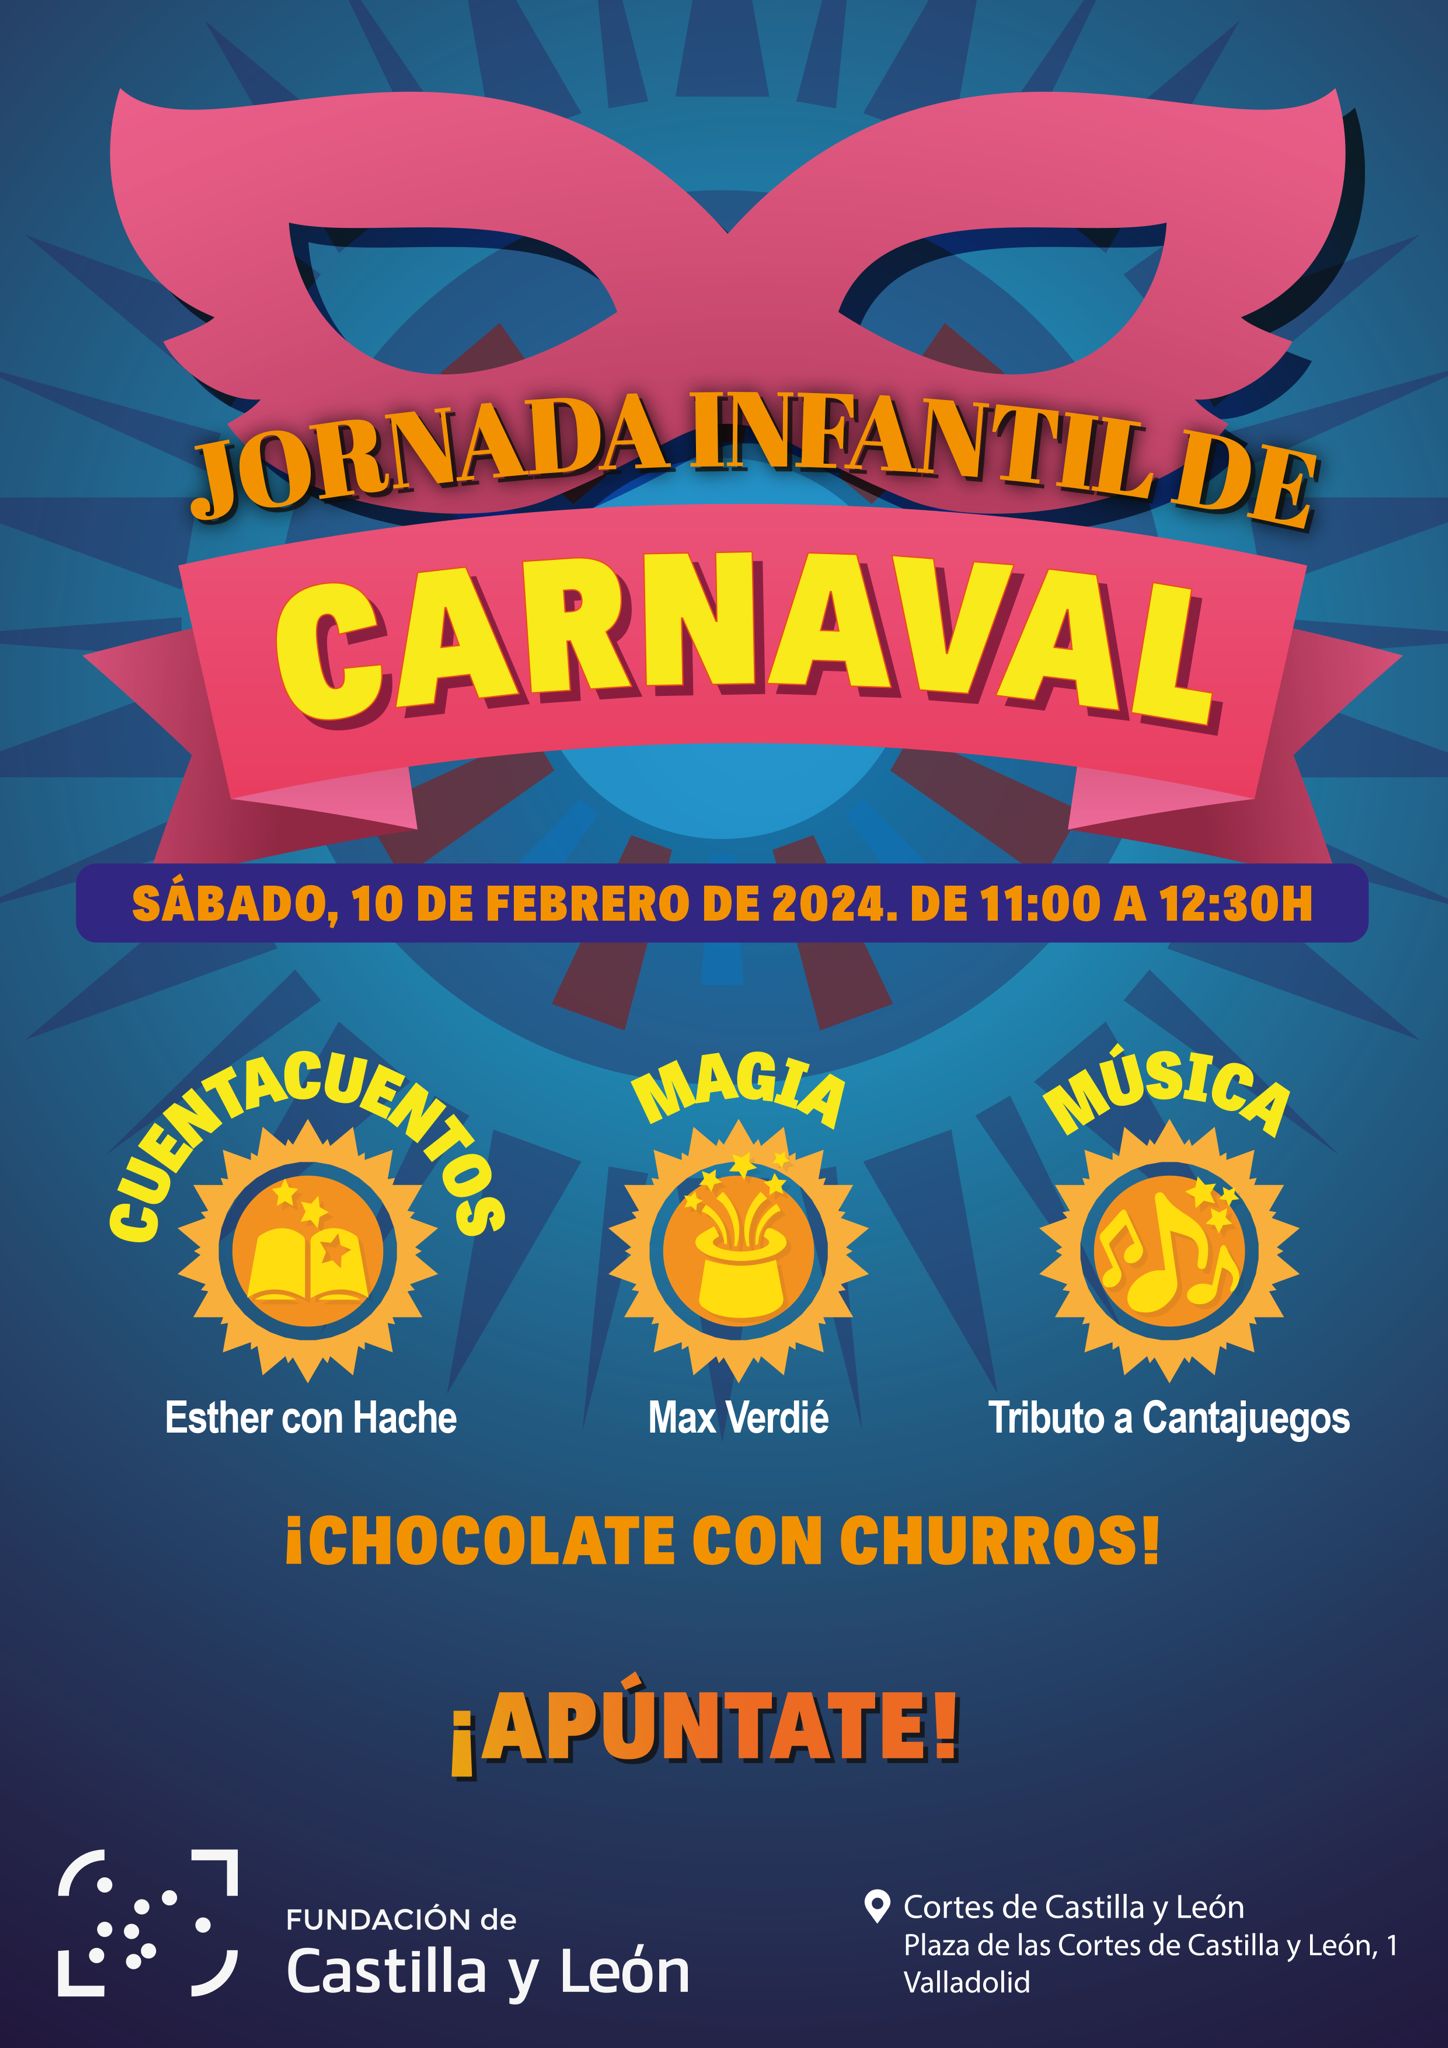 La Fundación de Castilla y León organiza una jornada de Carnaval para acercar las Cortes a los niños